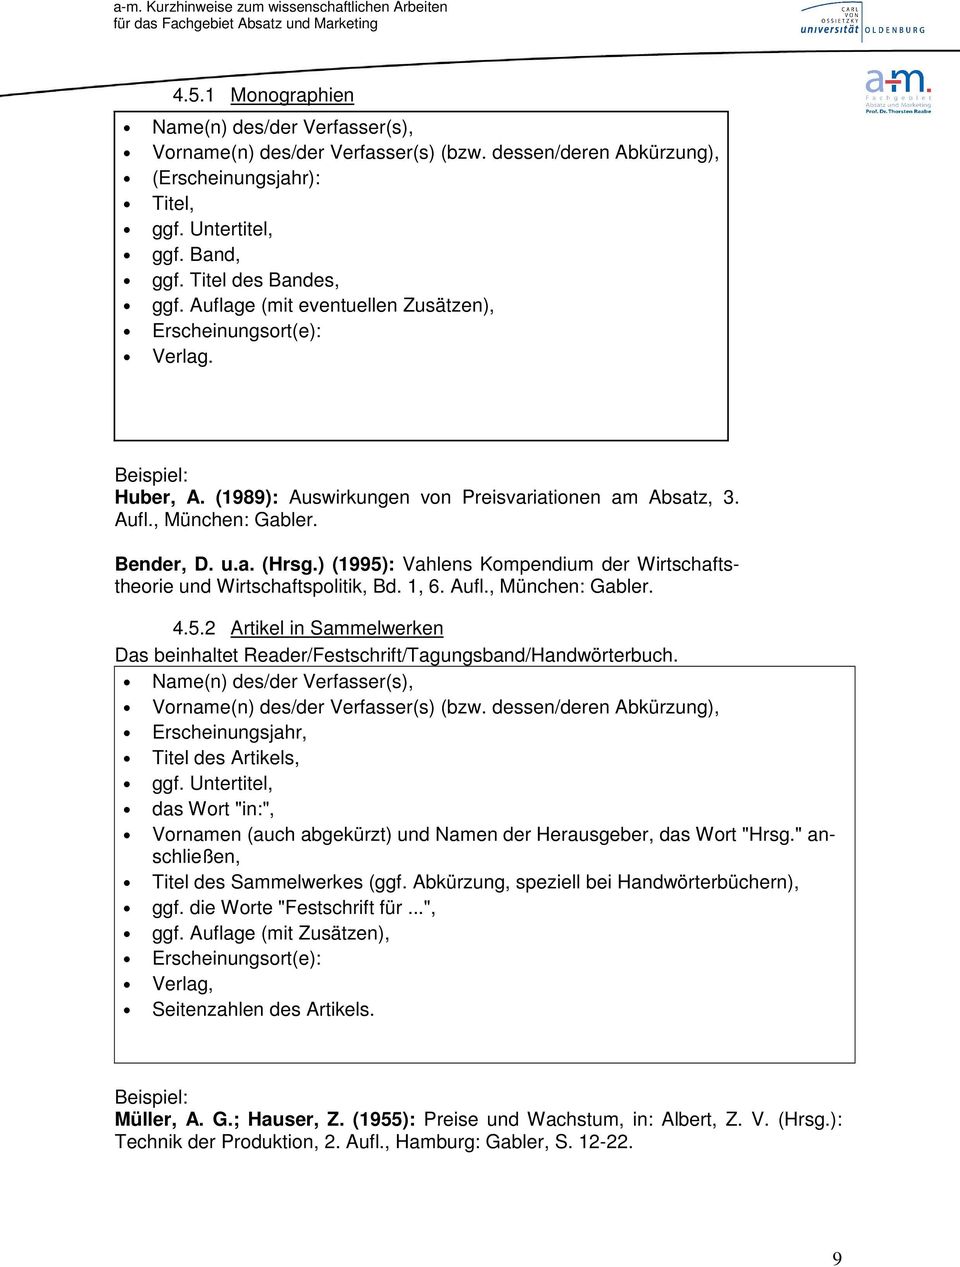 ) (1995): Vahlens Kompendium der Wirtschaftstheorie und Wirtschaftspolitik, Bd. 1, 6. Aufl., München: Gabler. 4.5.2 Artikel in Sammelwerken Das beinhaltet Reader/Festschrift/Tagungsband/Handwörterbuch.